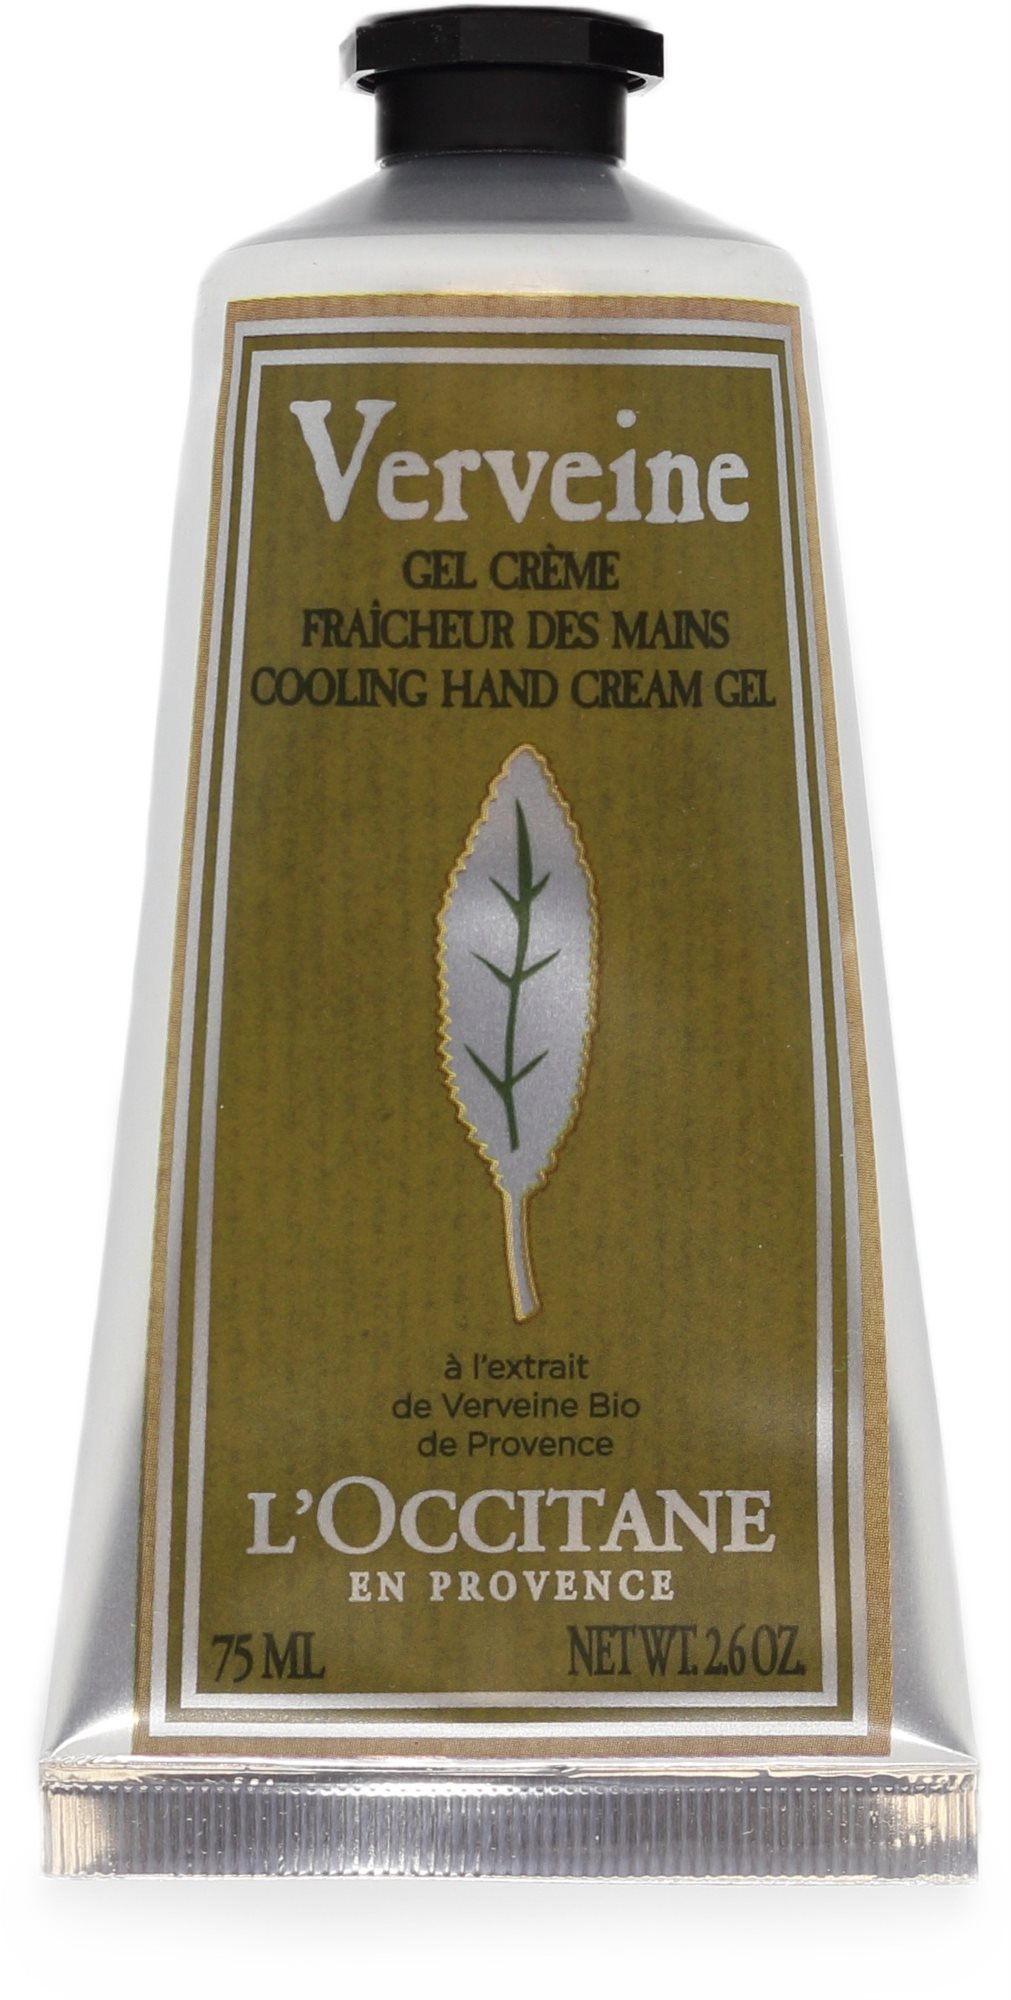 L'OCCITANE Verveine Cooling Hand Cream Gel 75 ml